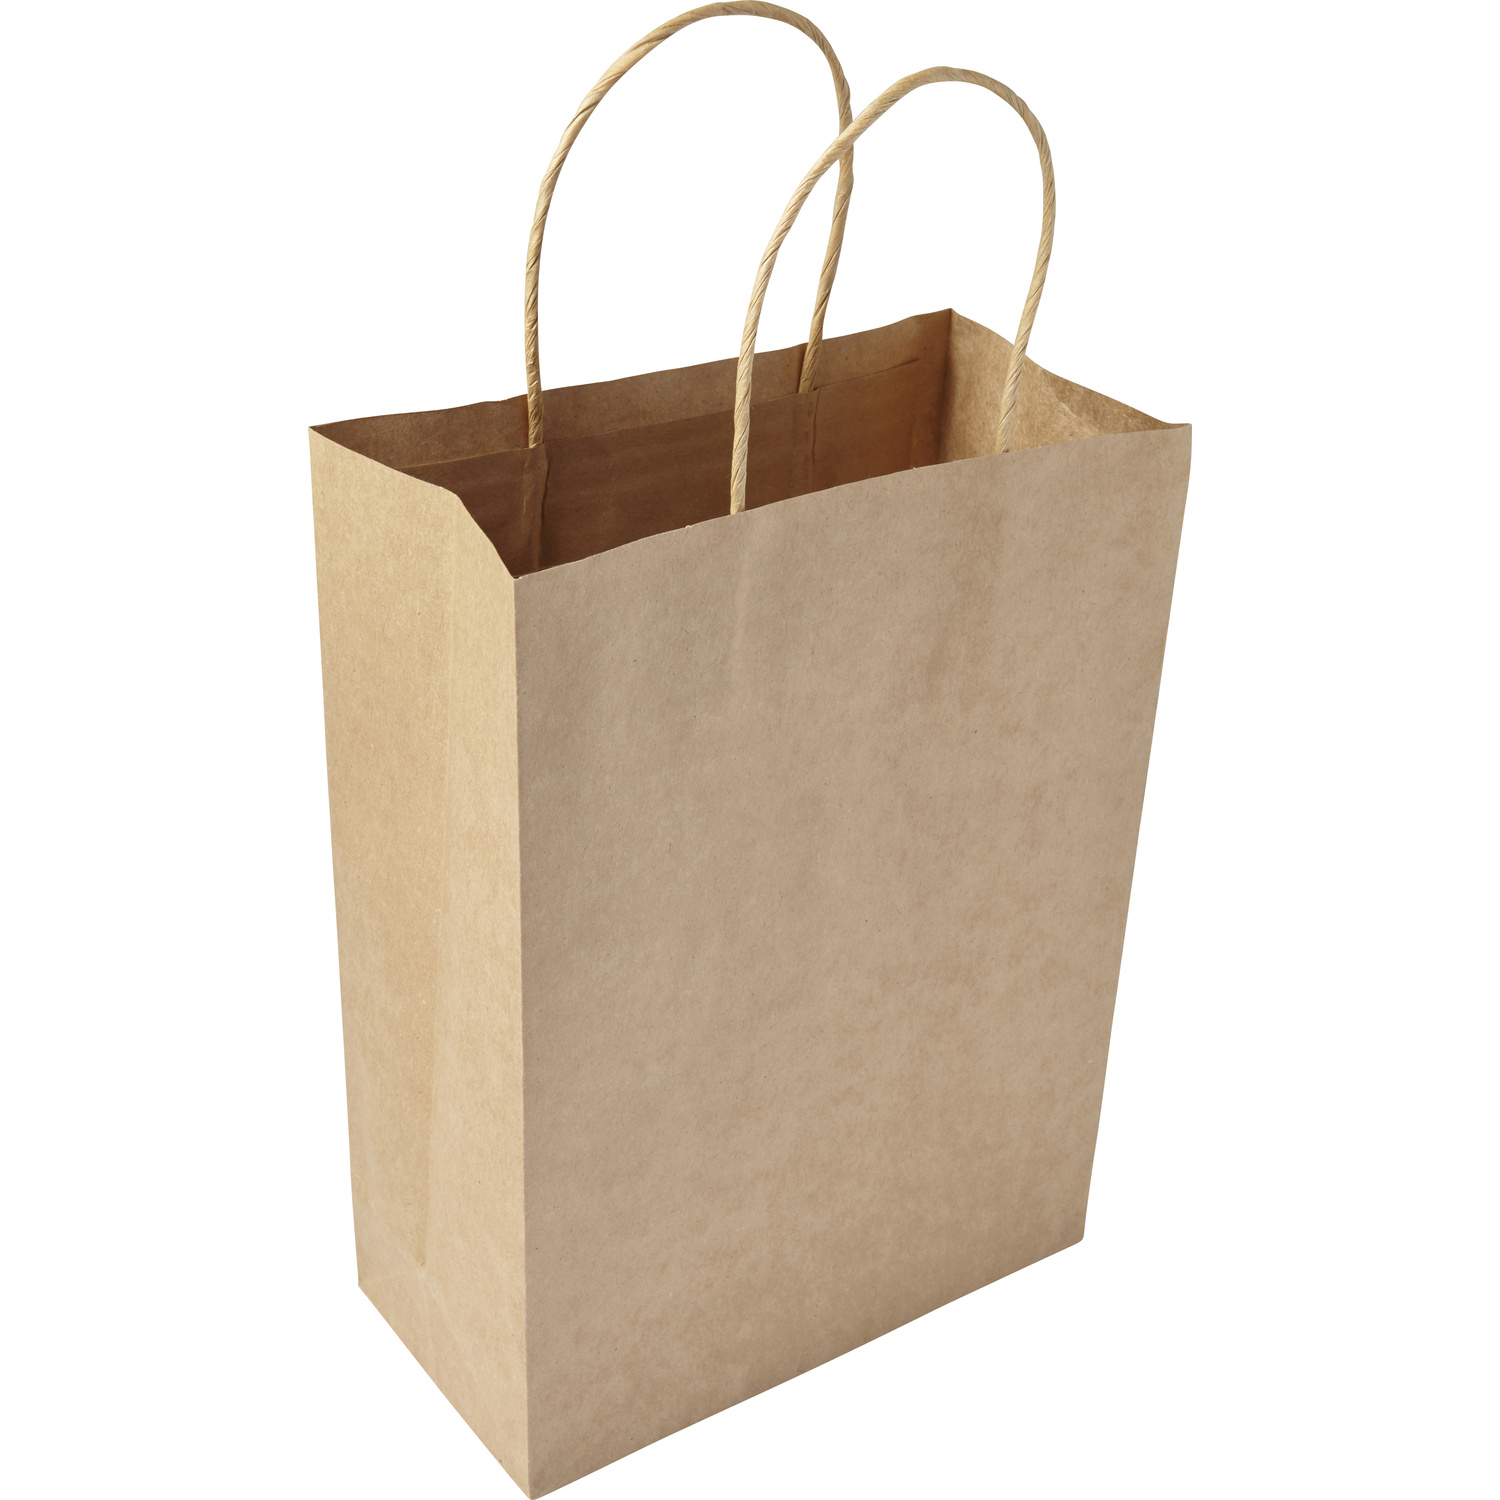 007841 011999999 3d135 lft pro01 fal - Paper bag (medium)